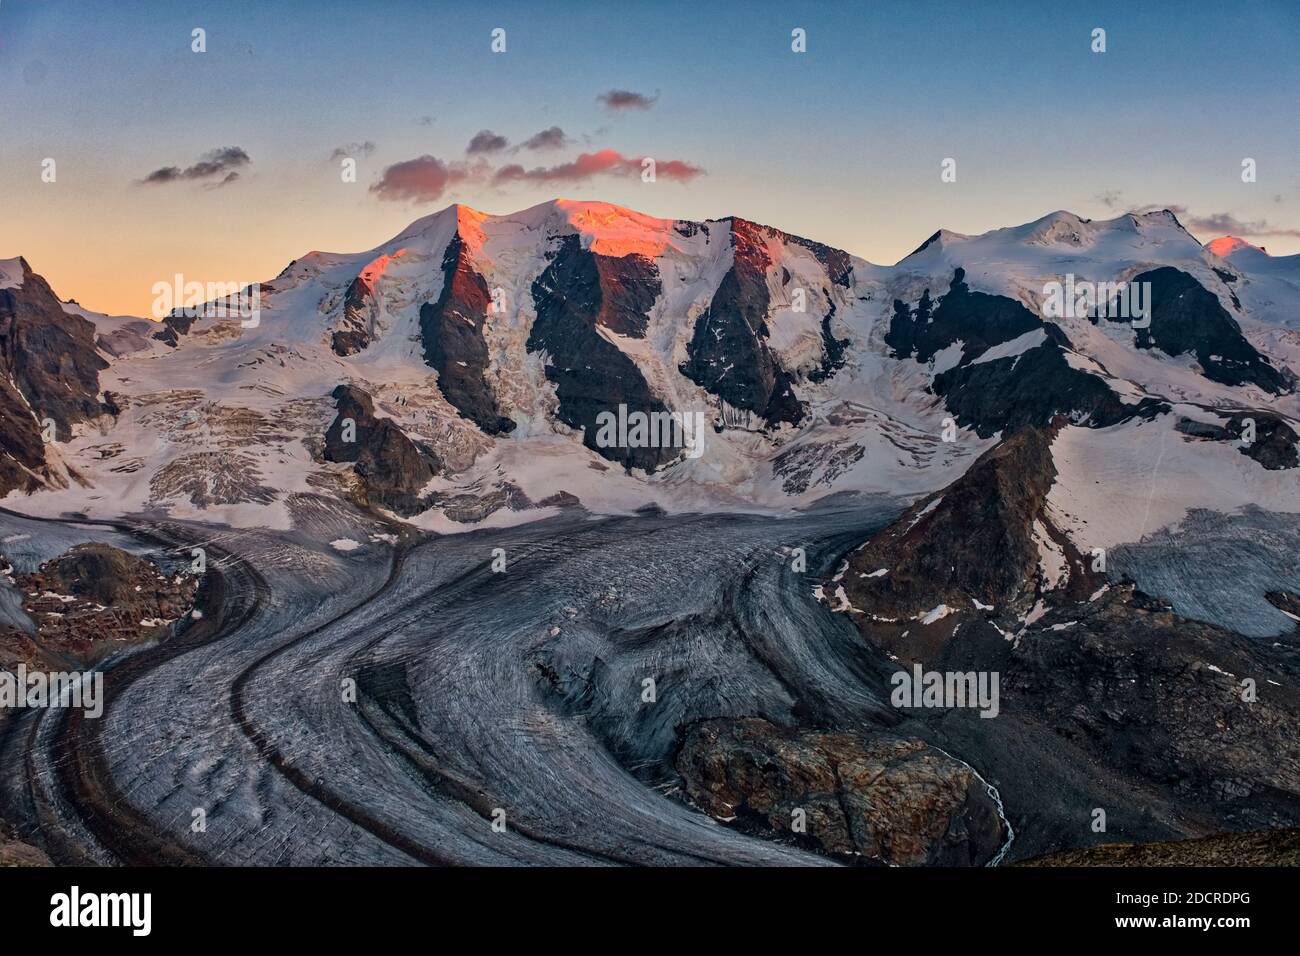 Les sommets de Piz Cambrena, Piz Palü et Bella Vista et la partie supérieure du glacier de pers, vus de Munt pers près de Diavolezza au coucher du soleil. Banque D'Images